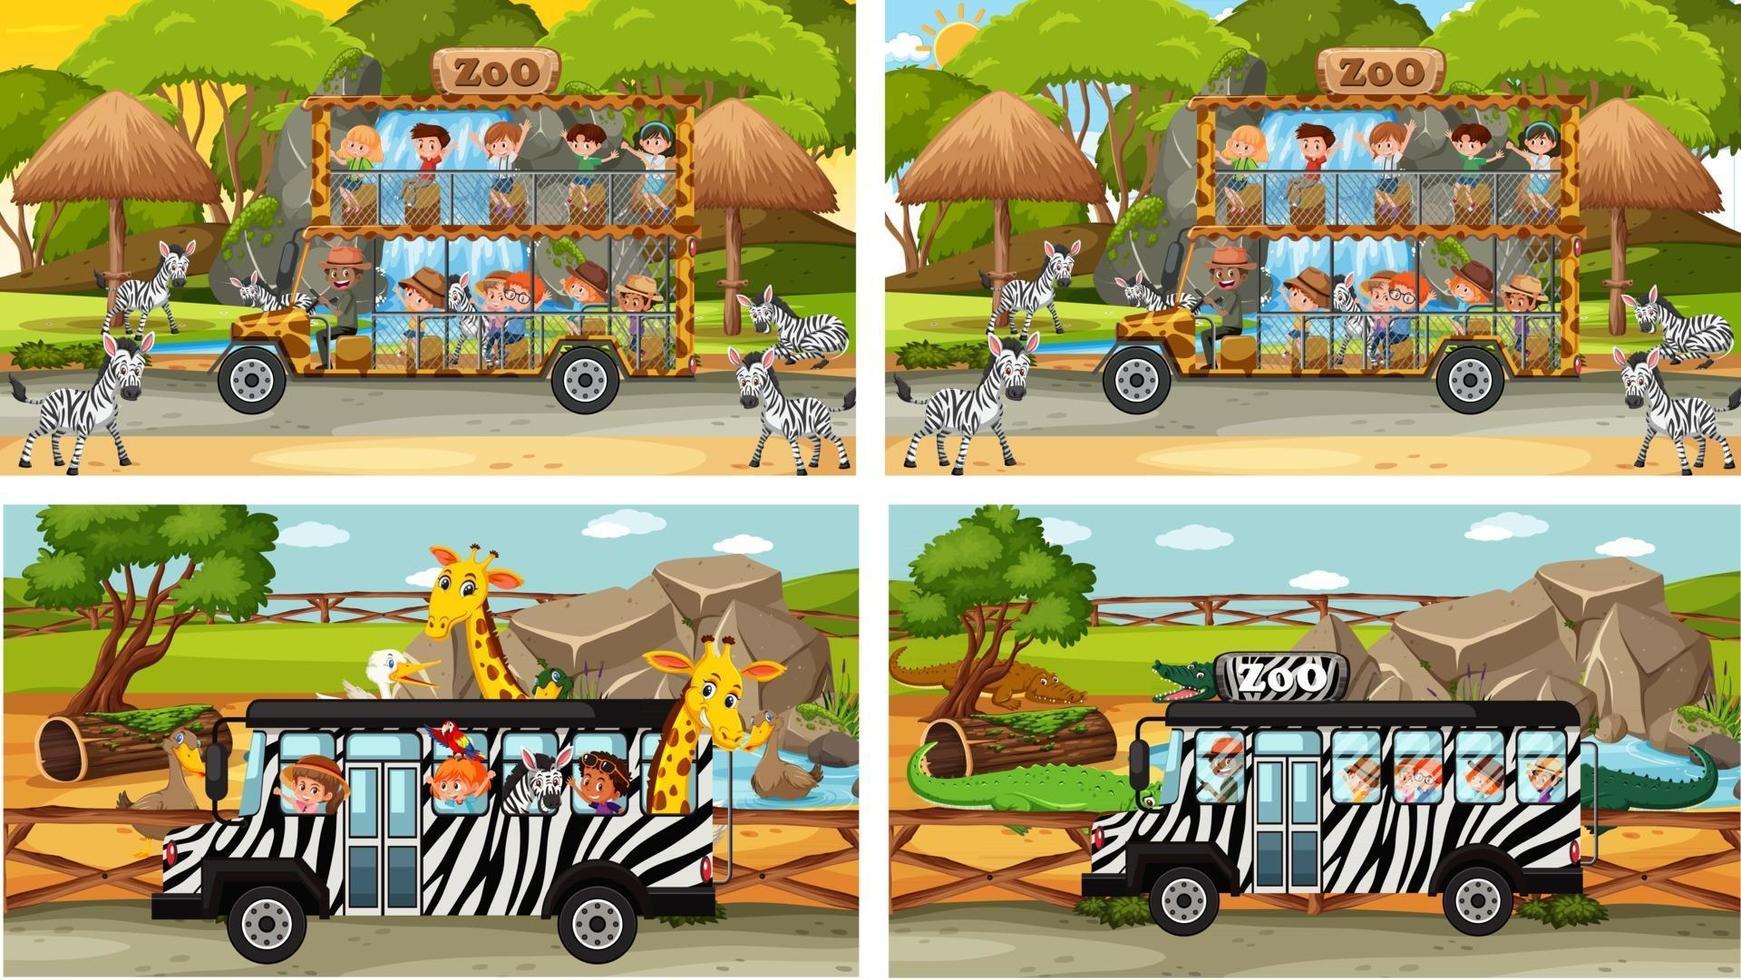 set van verschillende safari-scènes met dieren en kinderen stripfiguur vector